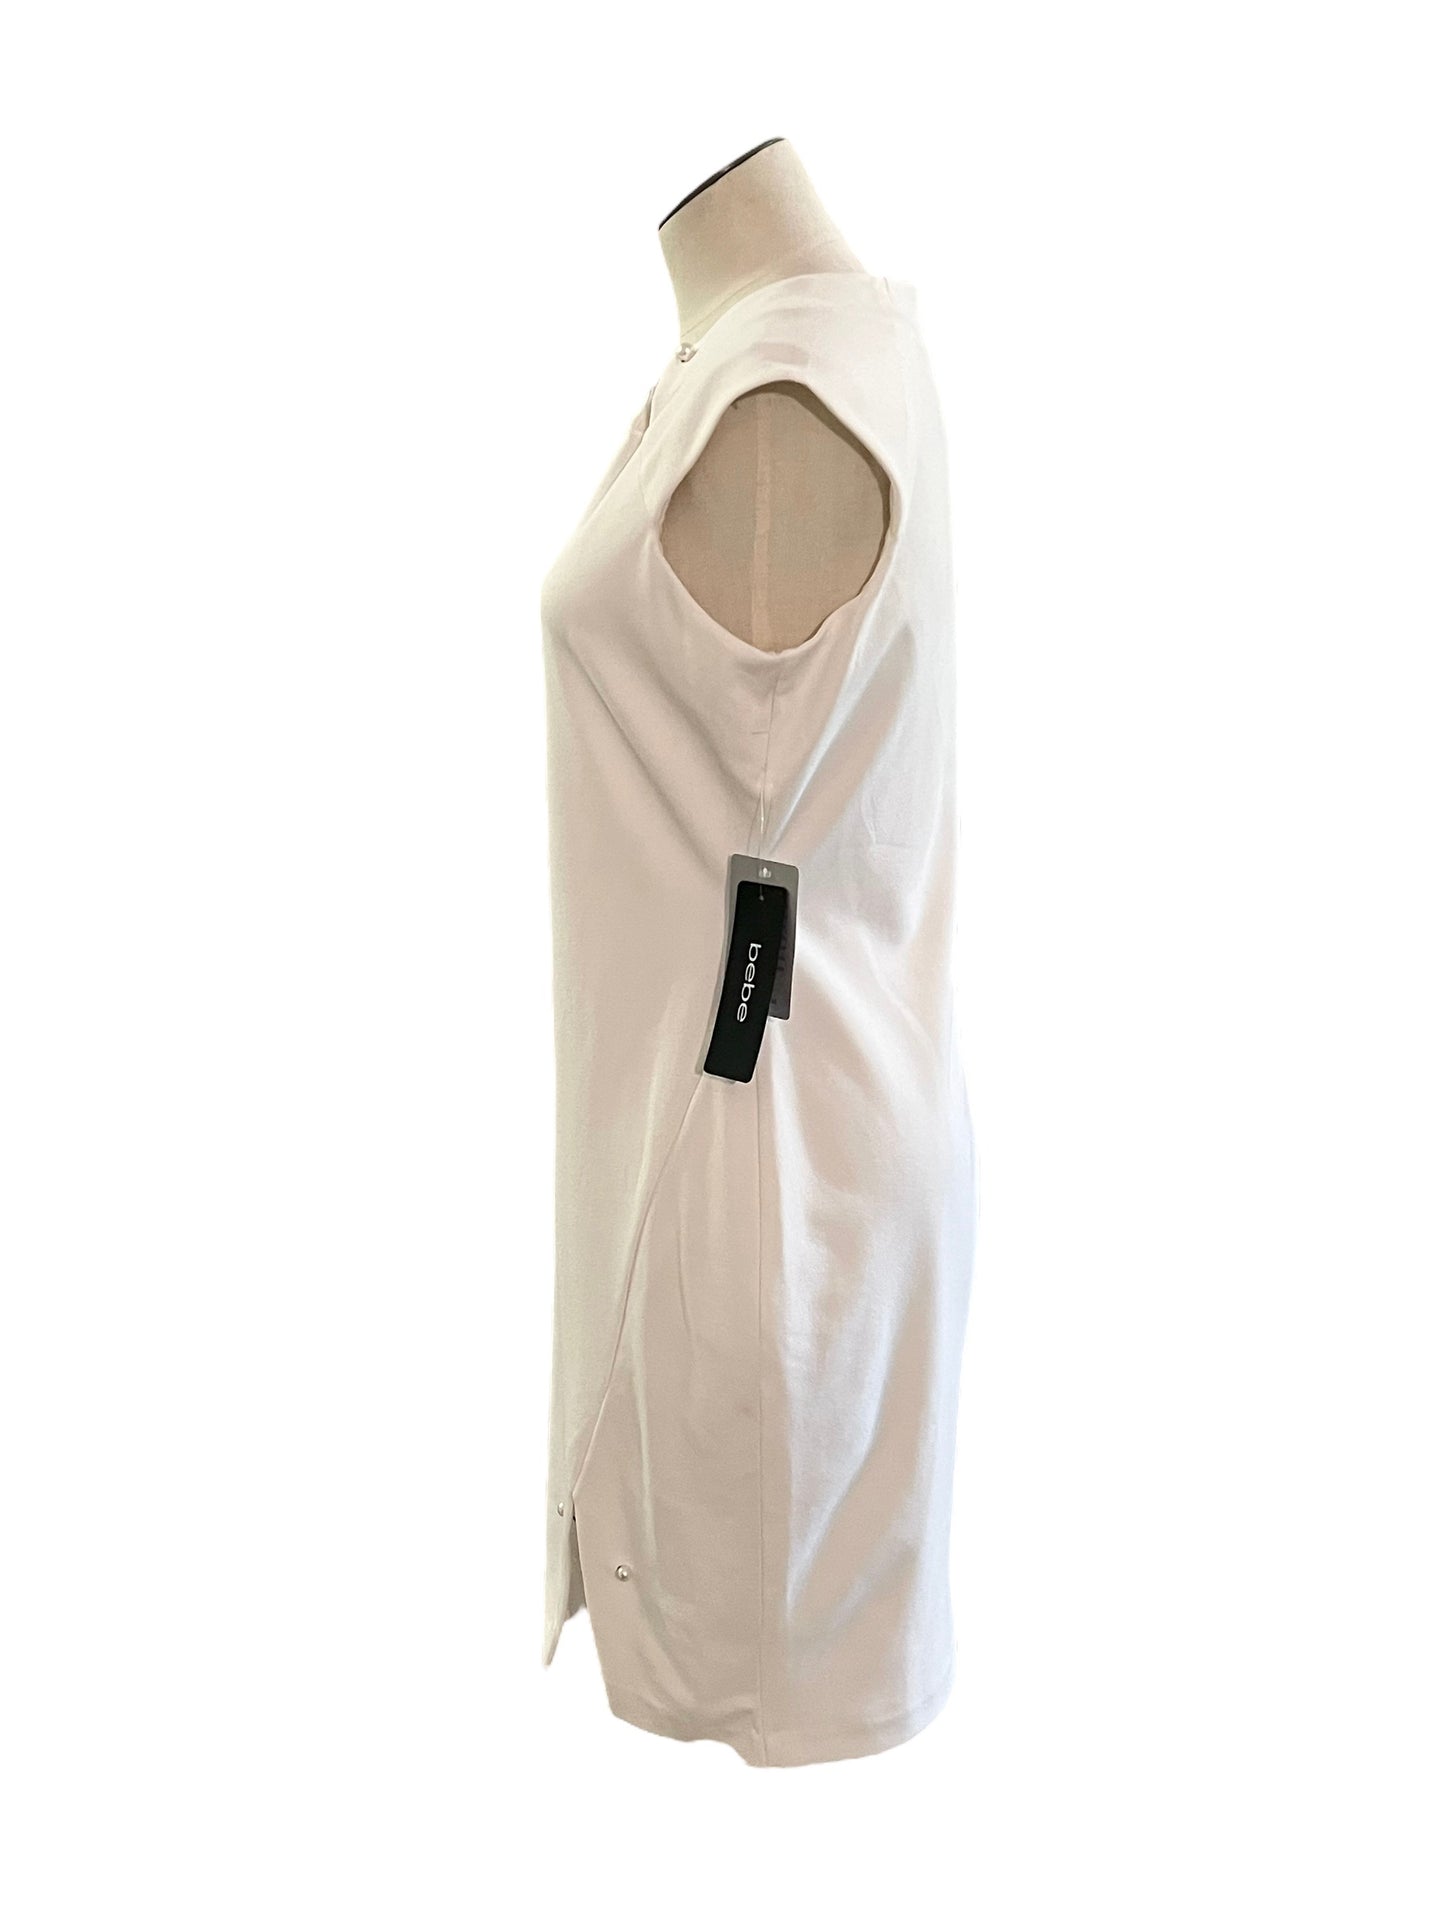 Bebe Size 10 White Pearl Pin Dress